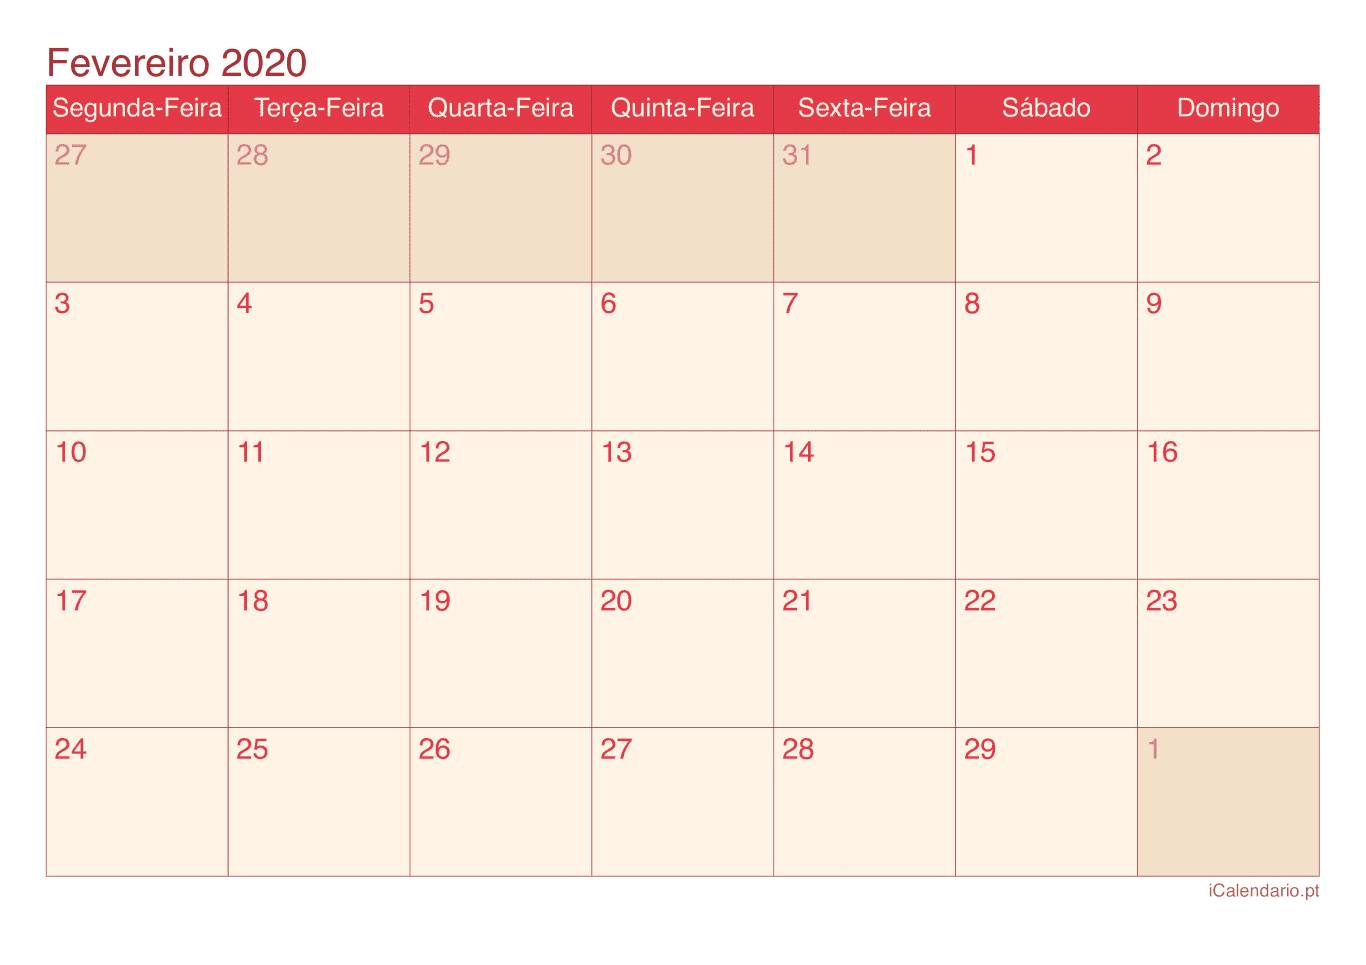 Calendário de fevereiro 2020 - Cherry